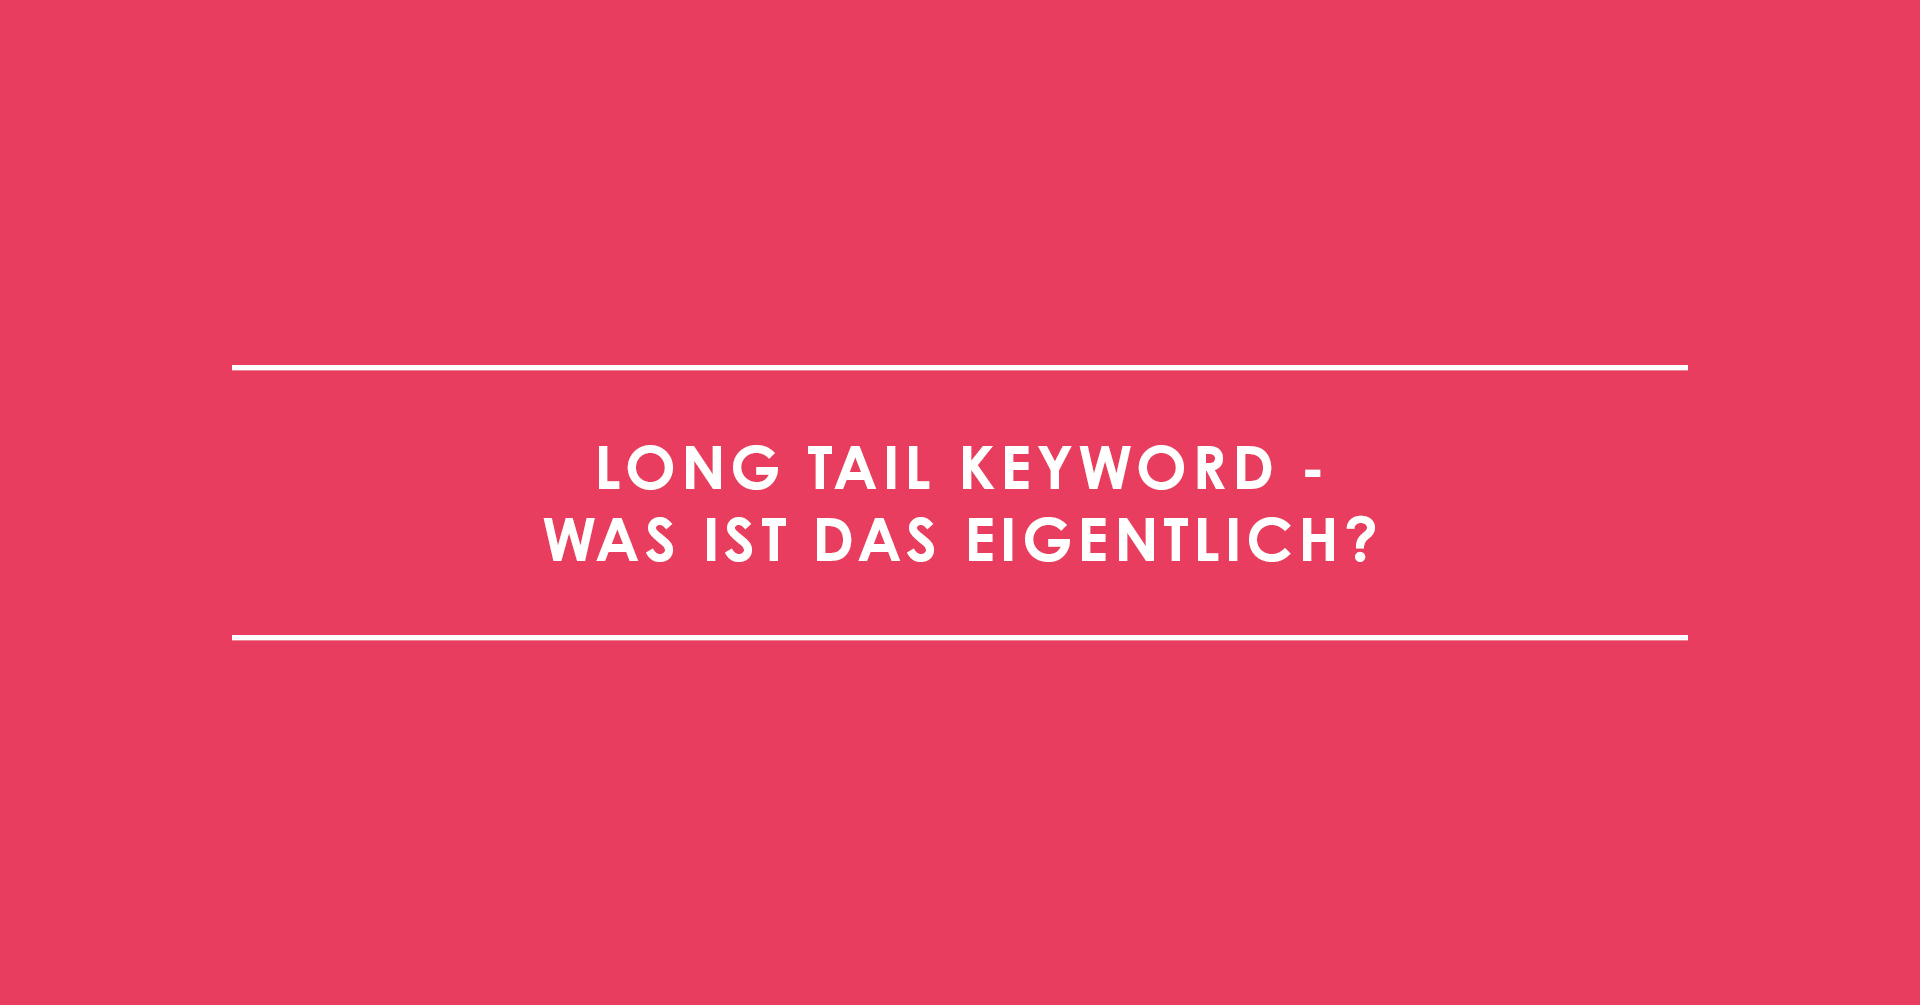 Long Tail Keyword - was ist das eigentlich?